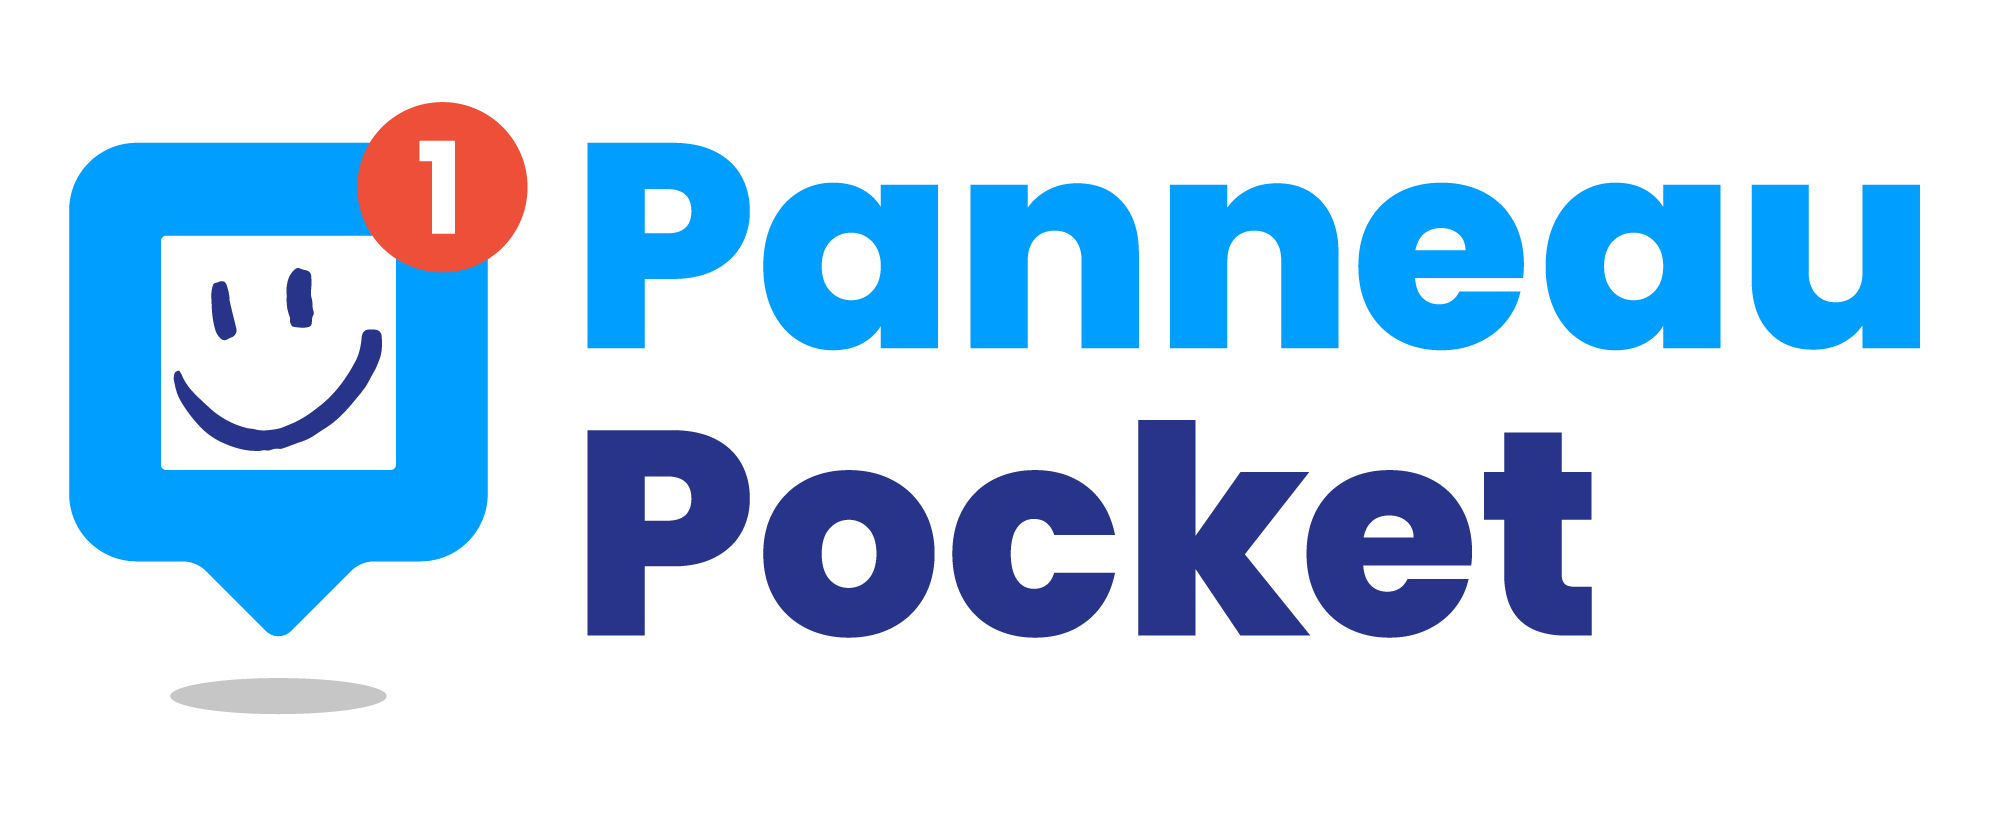 Logo Panneau Pocket